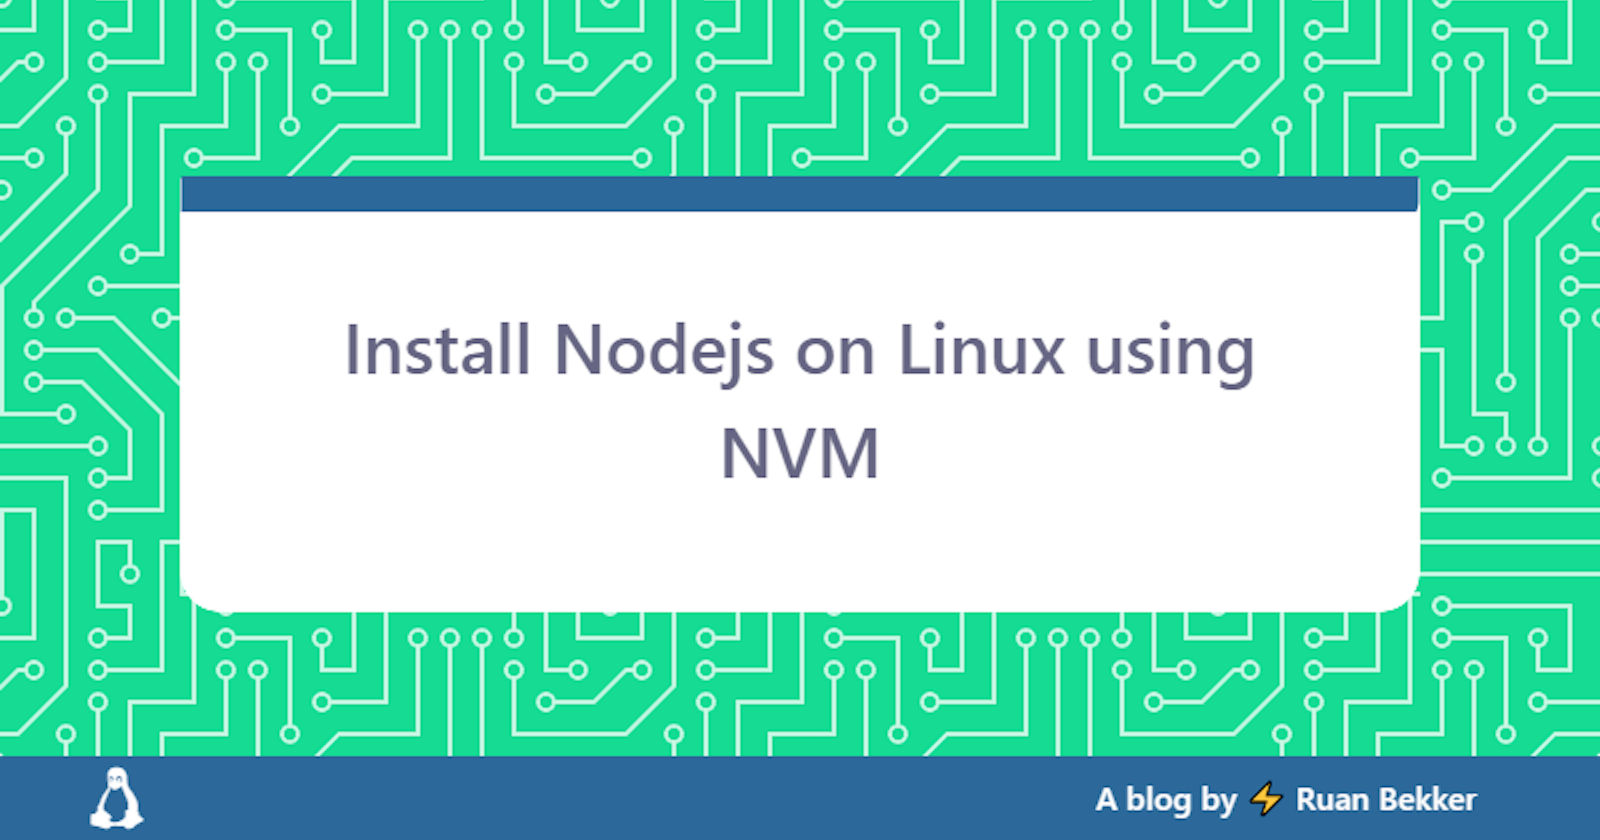 Install Nodejs on Linux using NVM